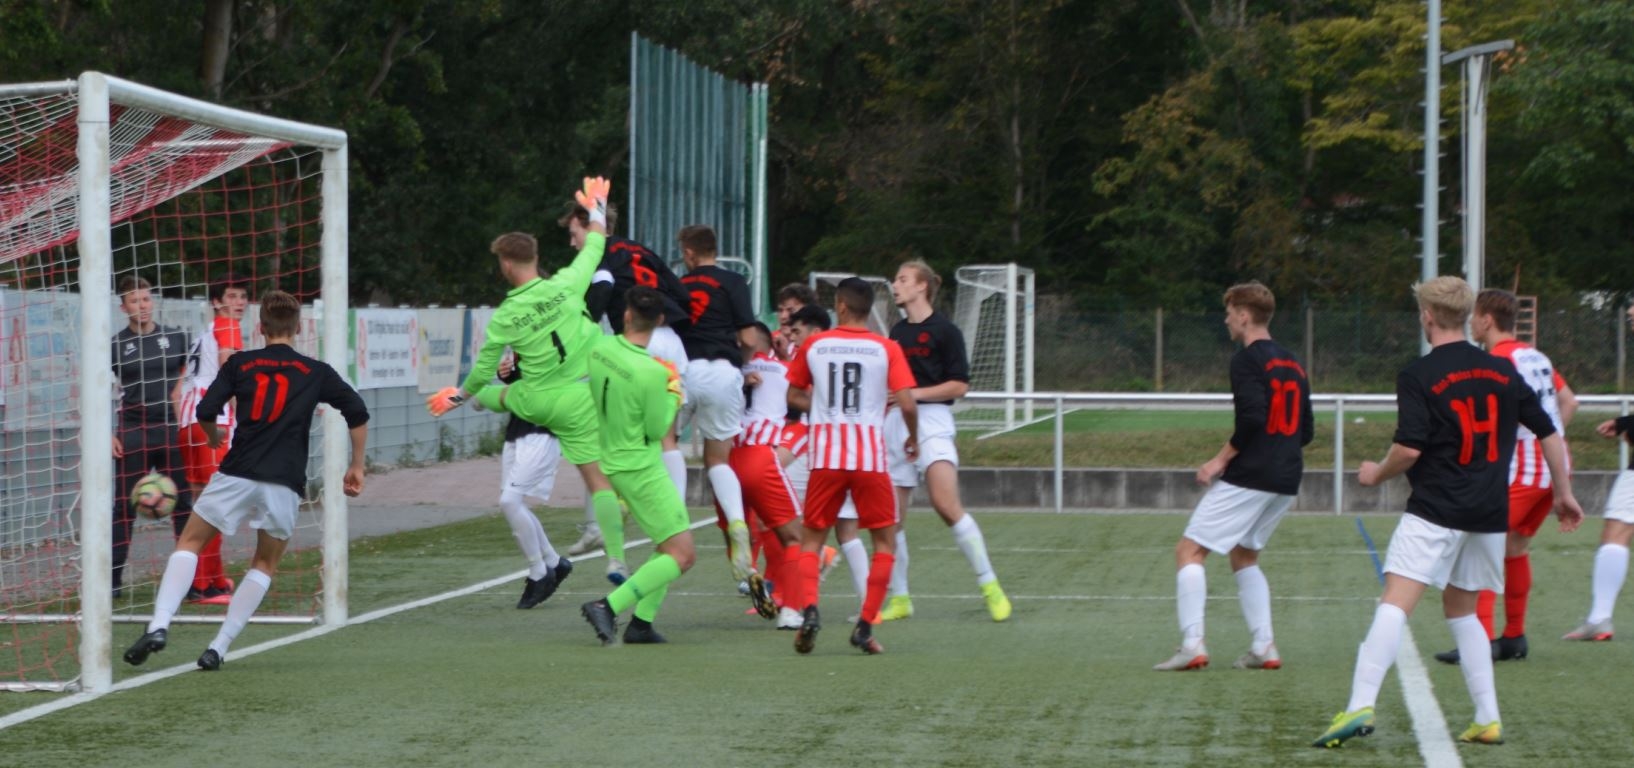 SV Rot-Weiß Walldorf - U19